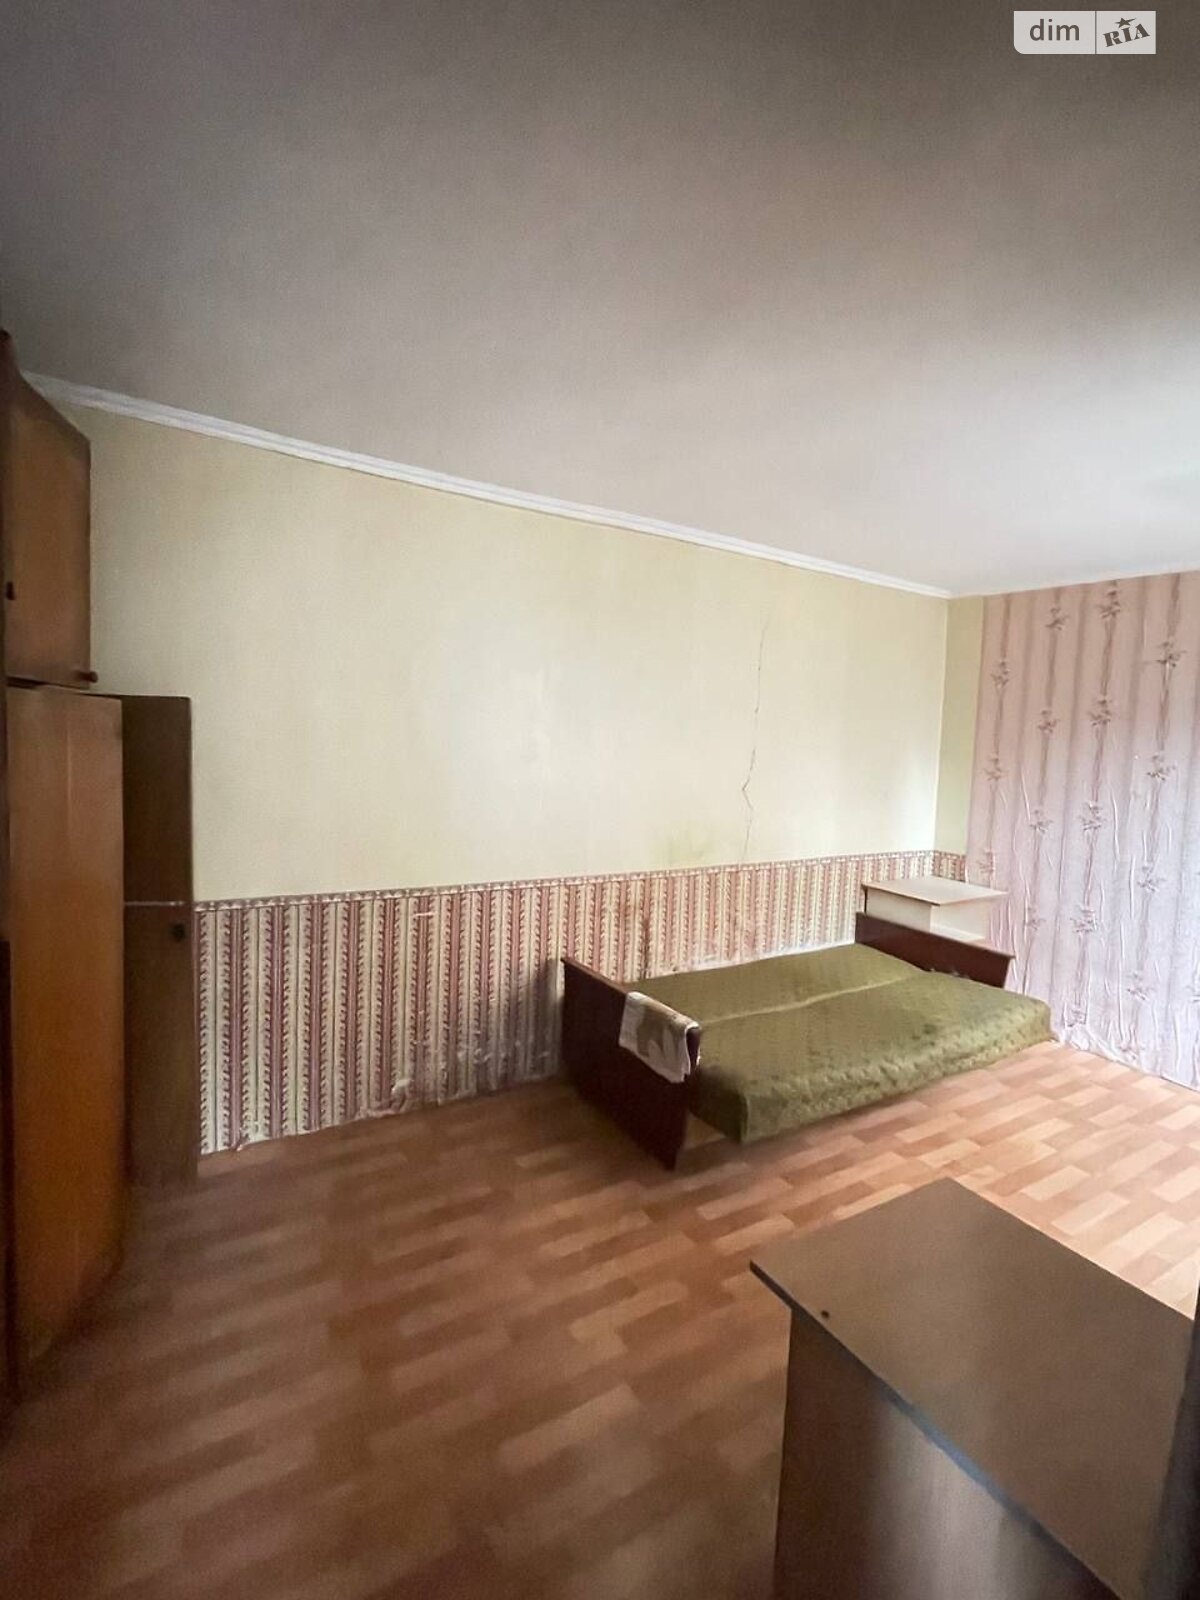 Продаж частини будинку в Хмельницькому, вулиця Шестакова, район Центр, 1 кімната фото 1